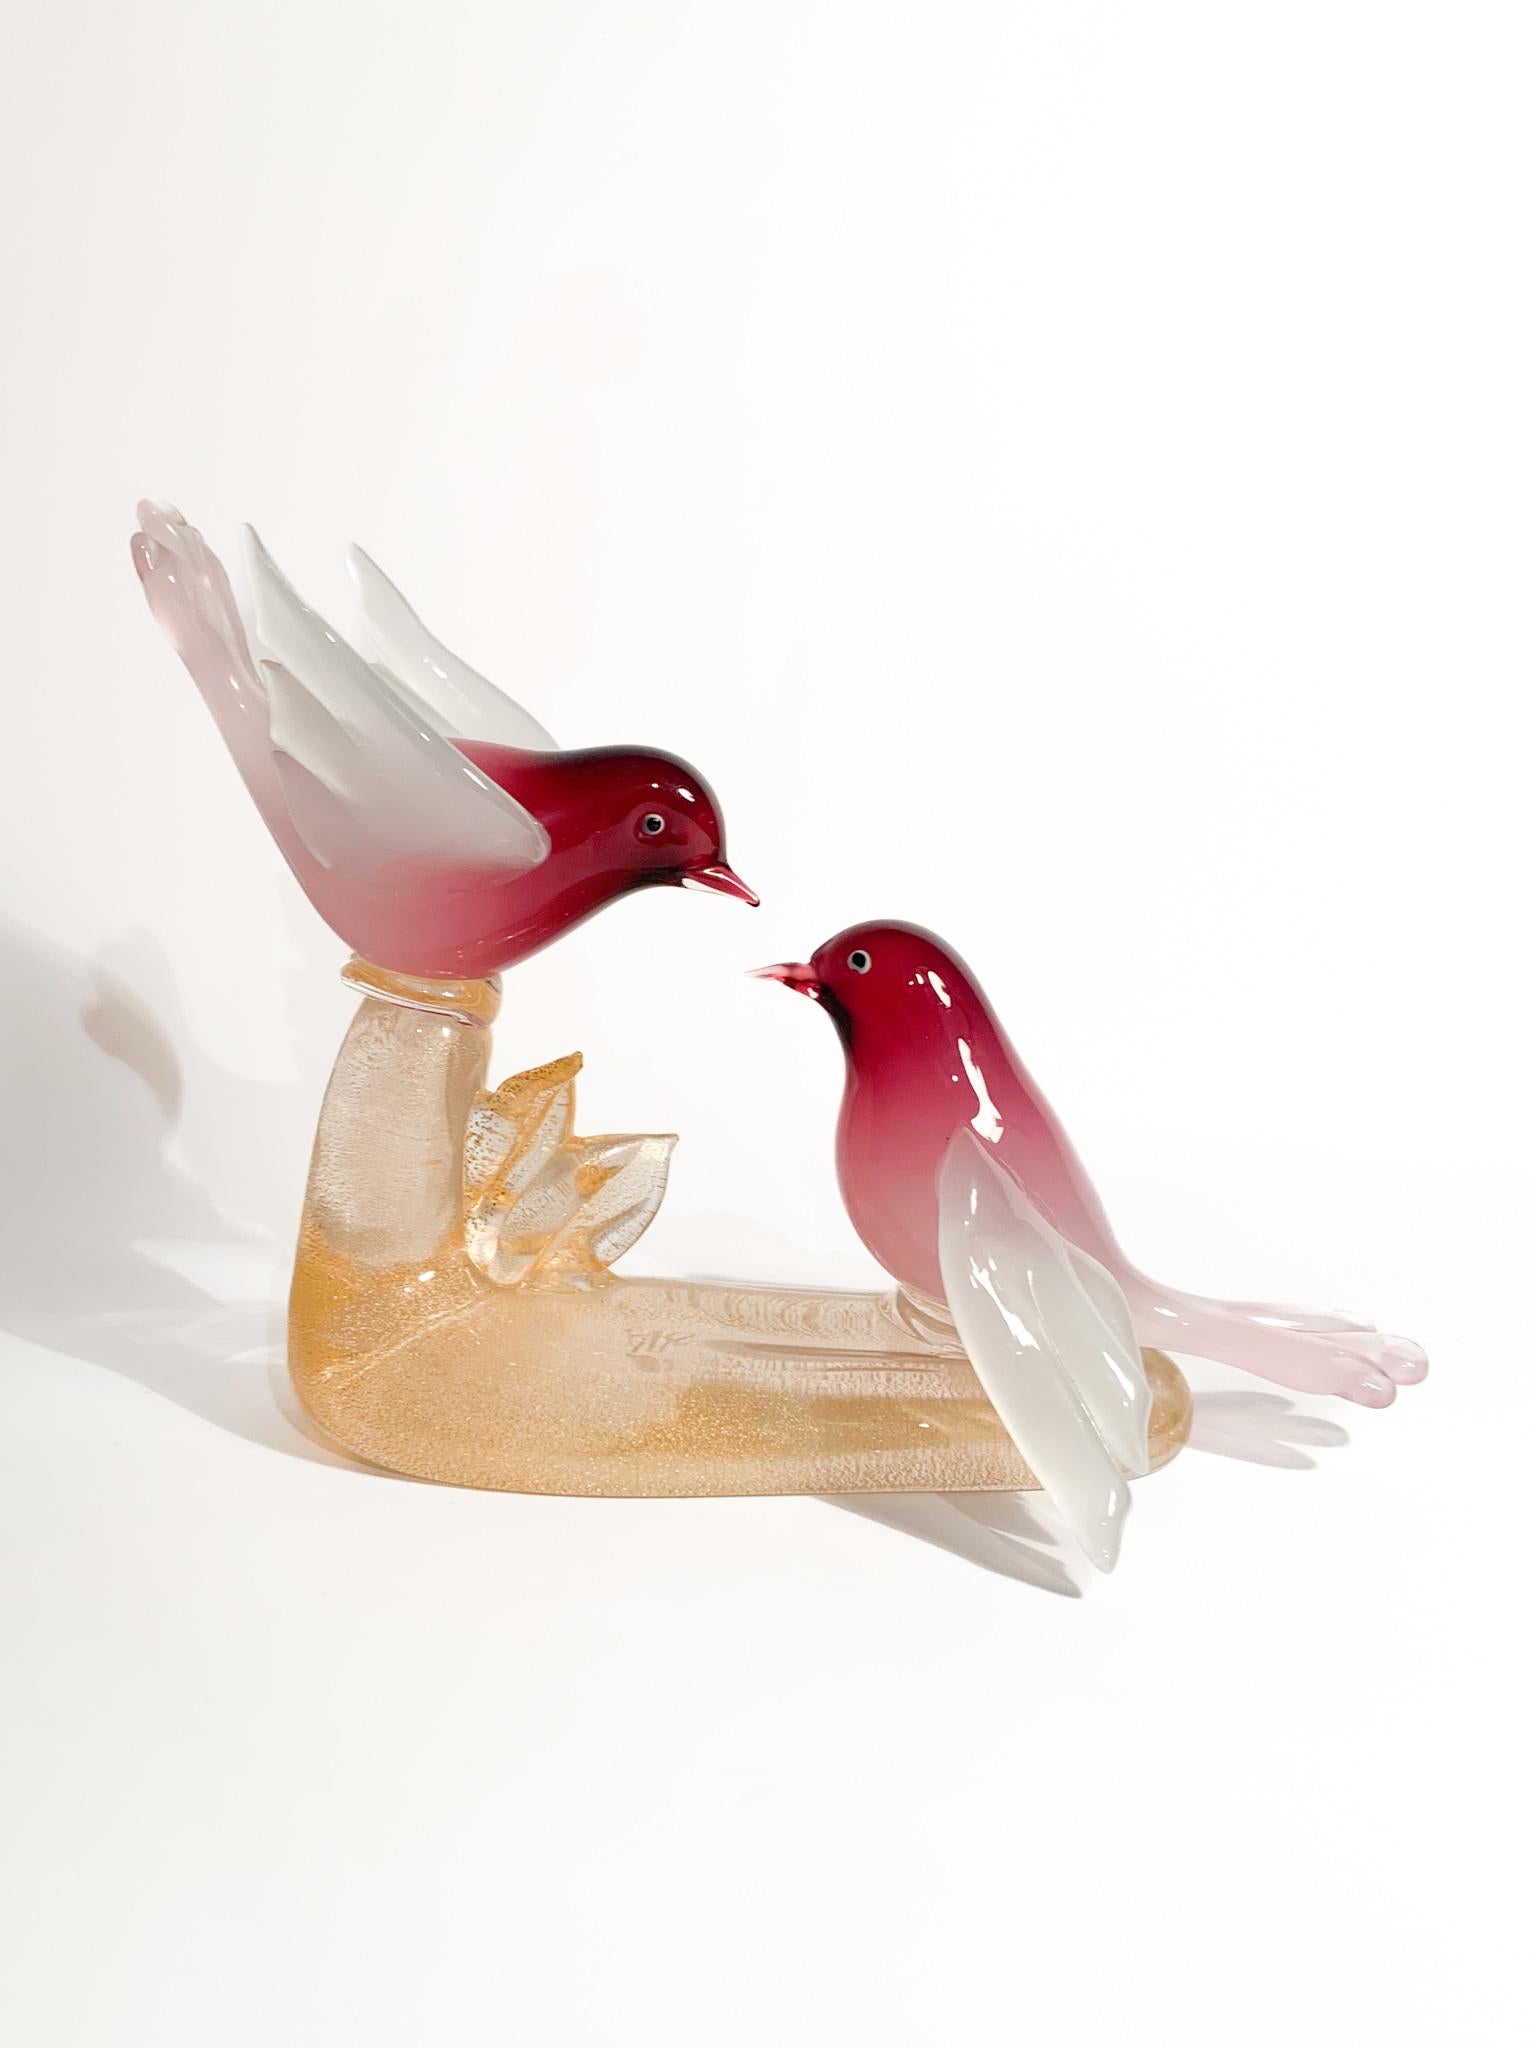 Sculpture d'un couple d'oiseaux en verre de Murano avec feuilles d'or, créée par ARS Cenedese dans les années 1960.

Ø 26 cm Ø 16 cm h 21 cm